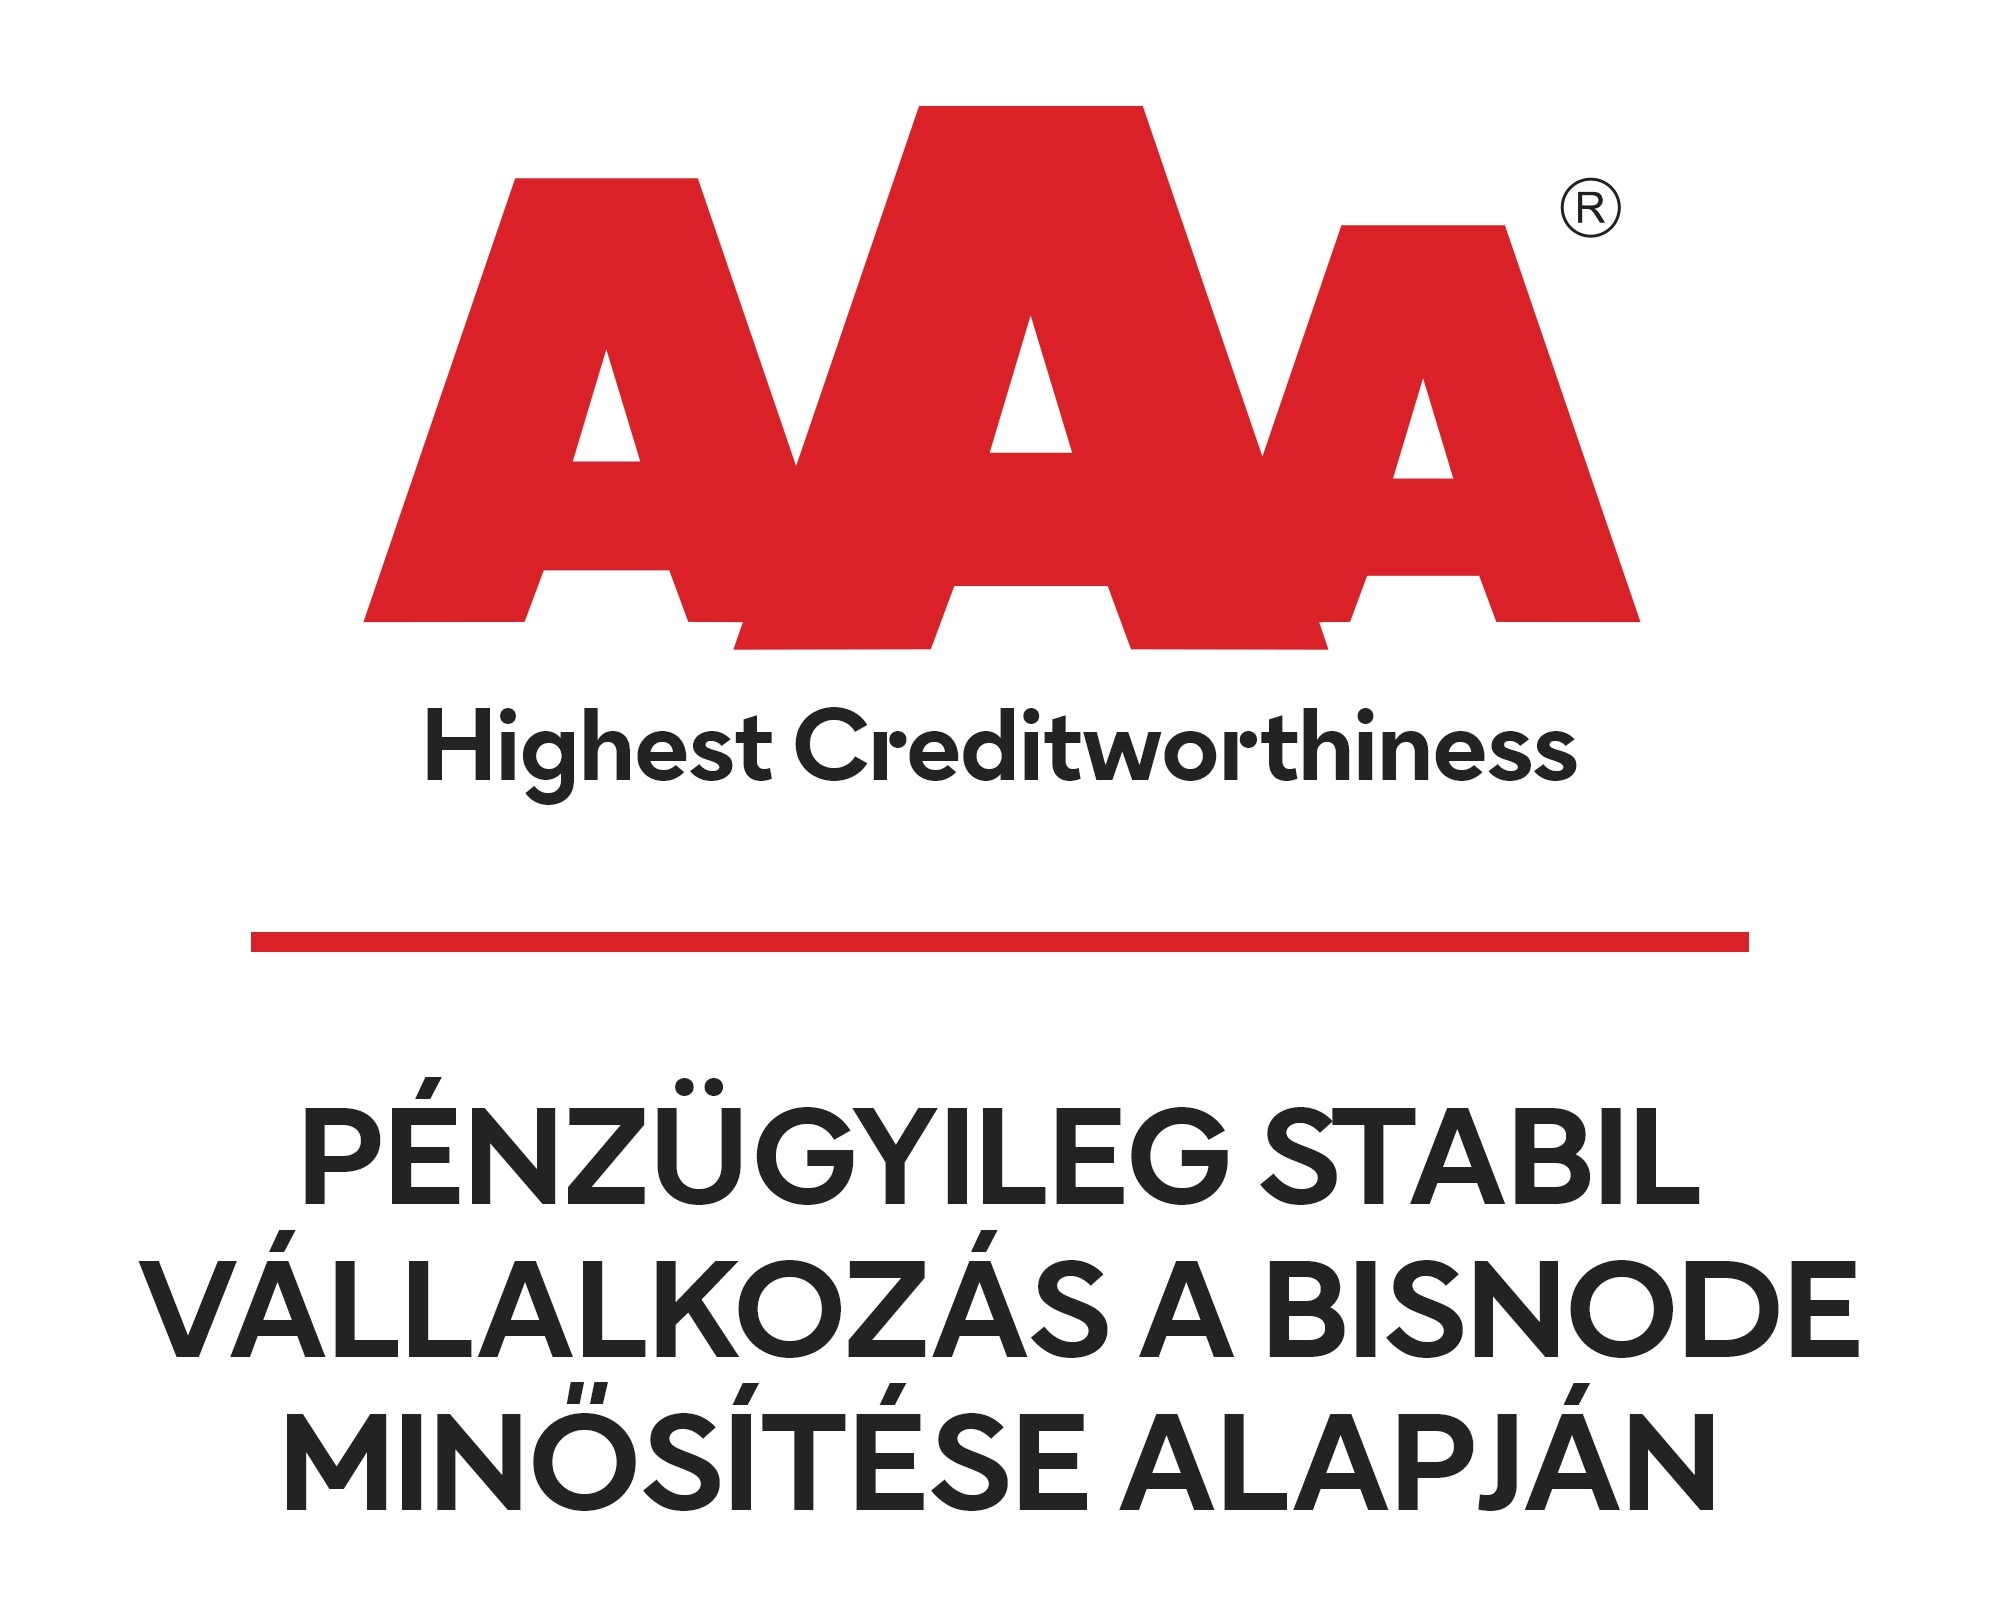 A pénzügyi megbízhatóság elismerése: Bisnode AAA (tripla A) minősítés